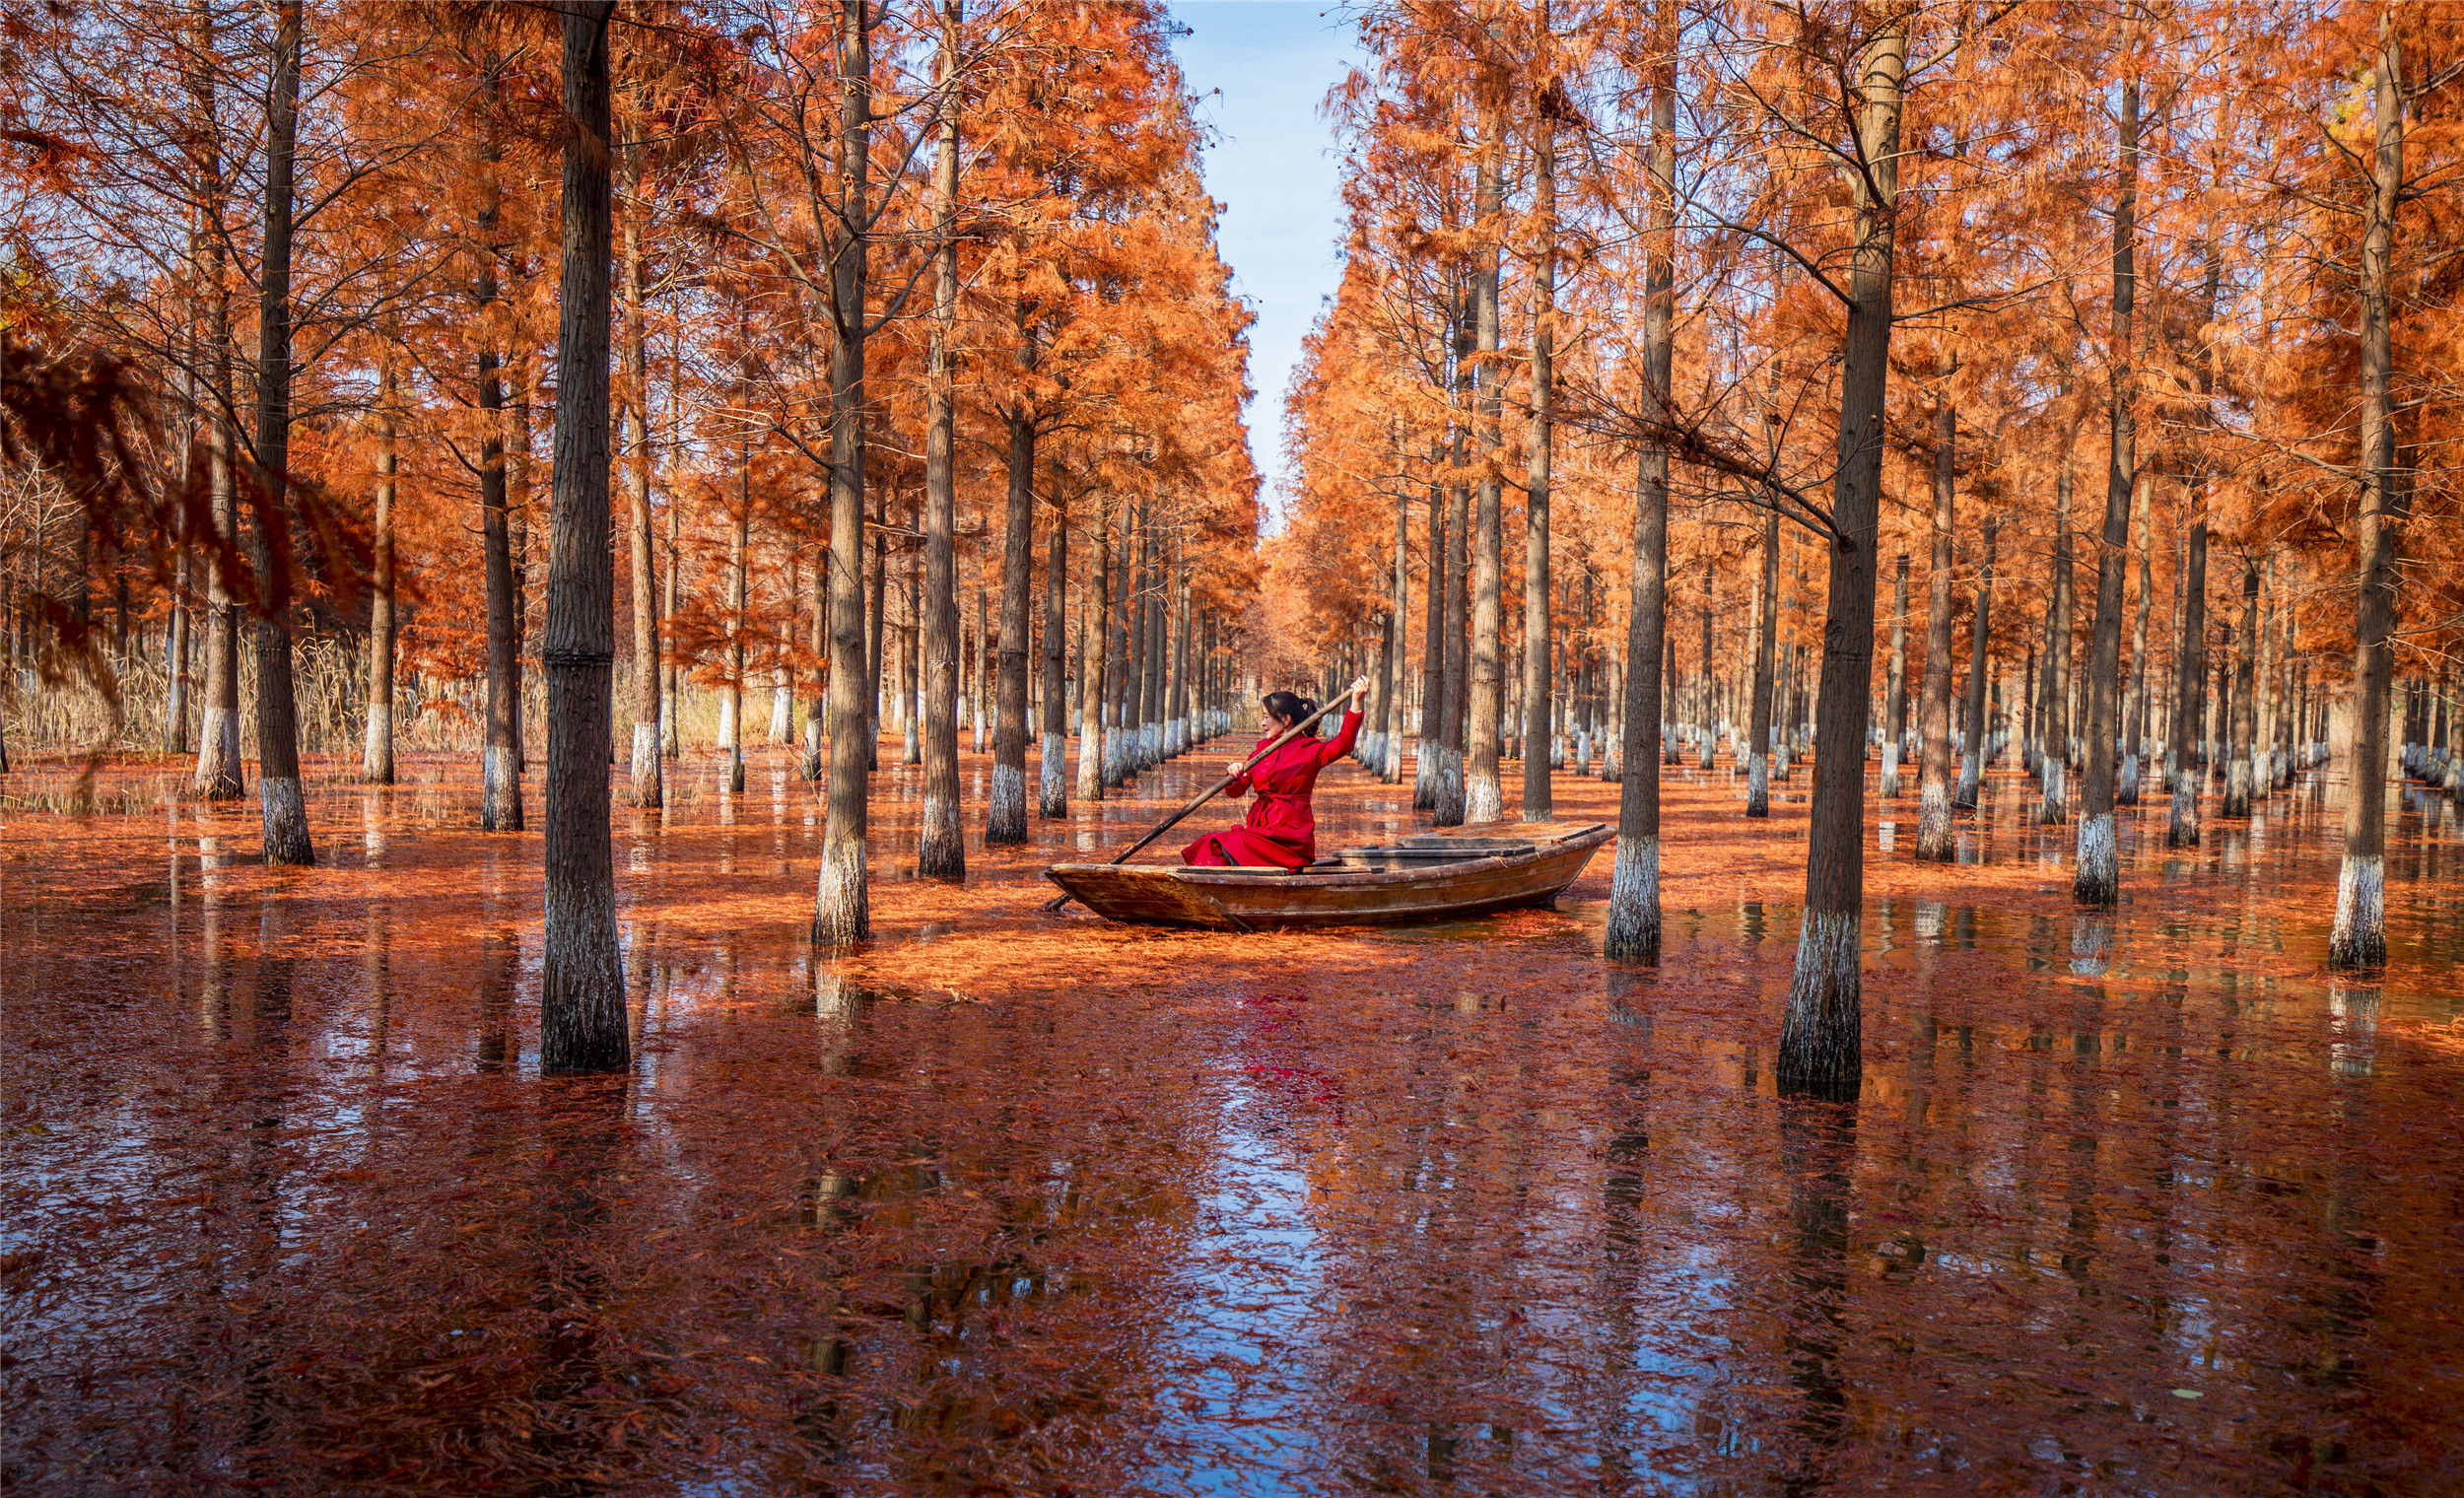 美丽江苏·每日一景丨泗洪洪泽湖湿地景区:杉在水中立 人在画中游